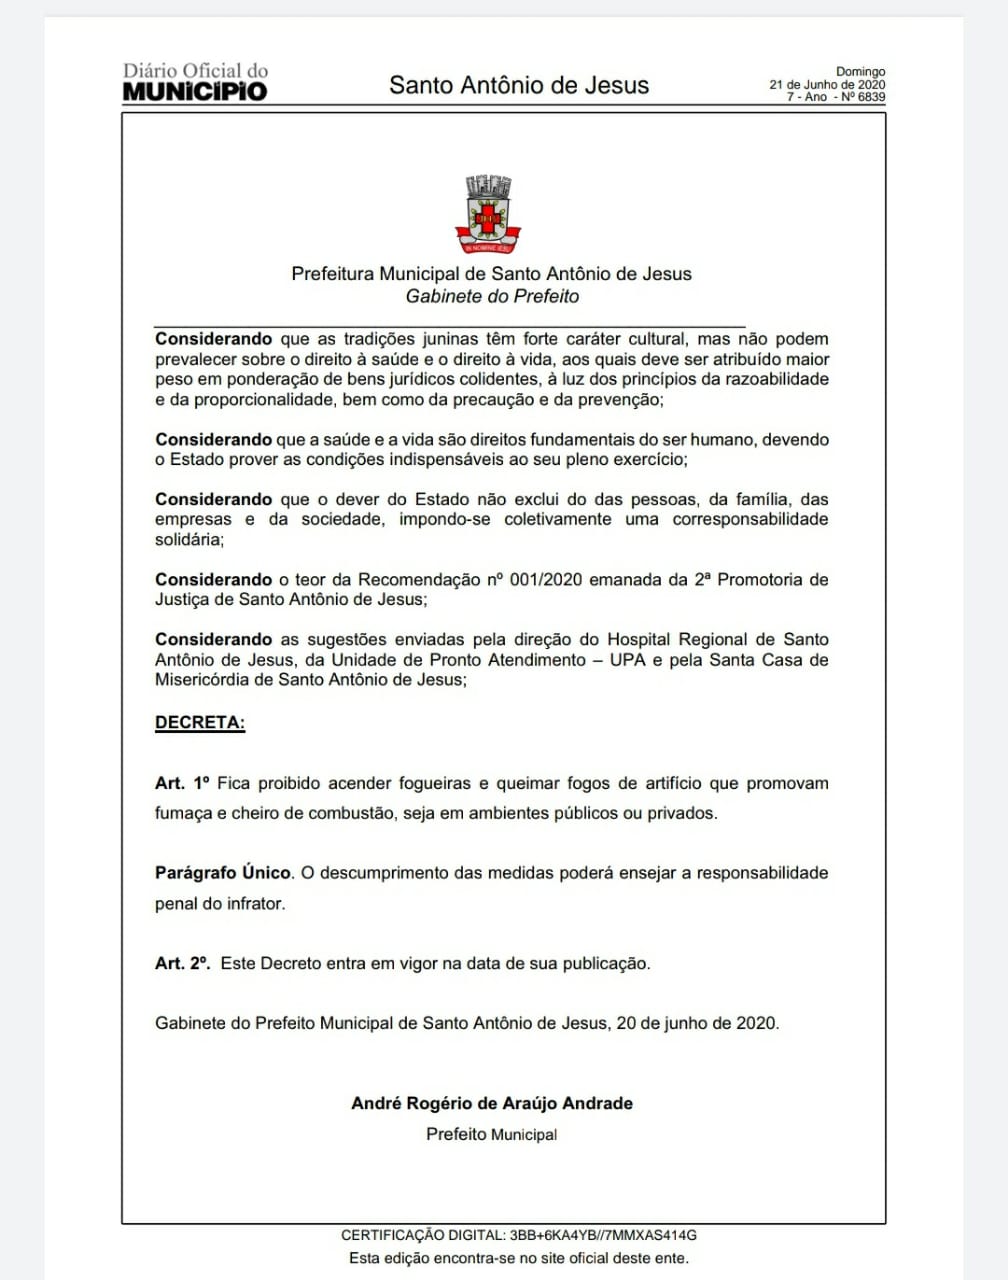 SAJ: decisão da prefeitura de proibir a queima de fogos e fogueira no São João foi baseada em recomendação do Ministério Público